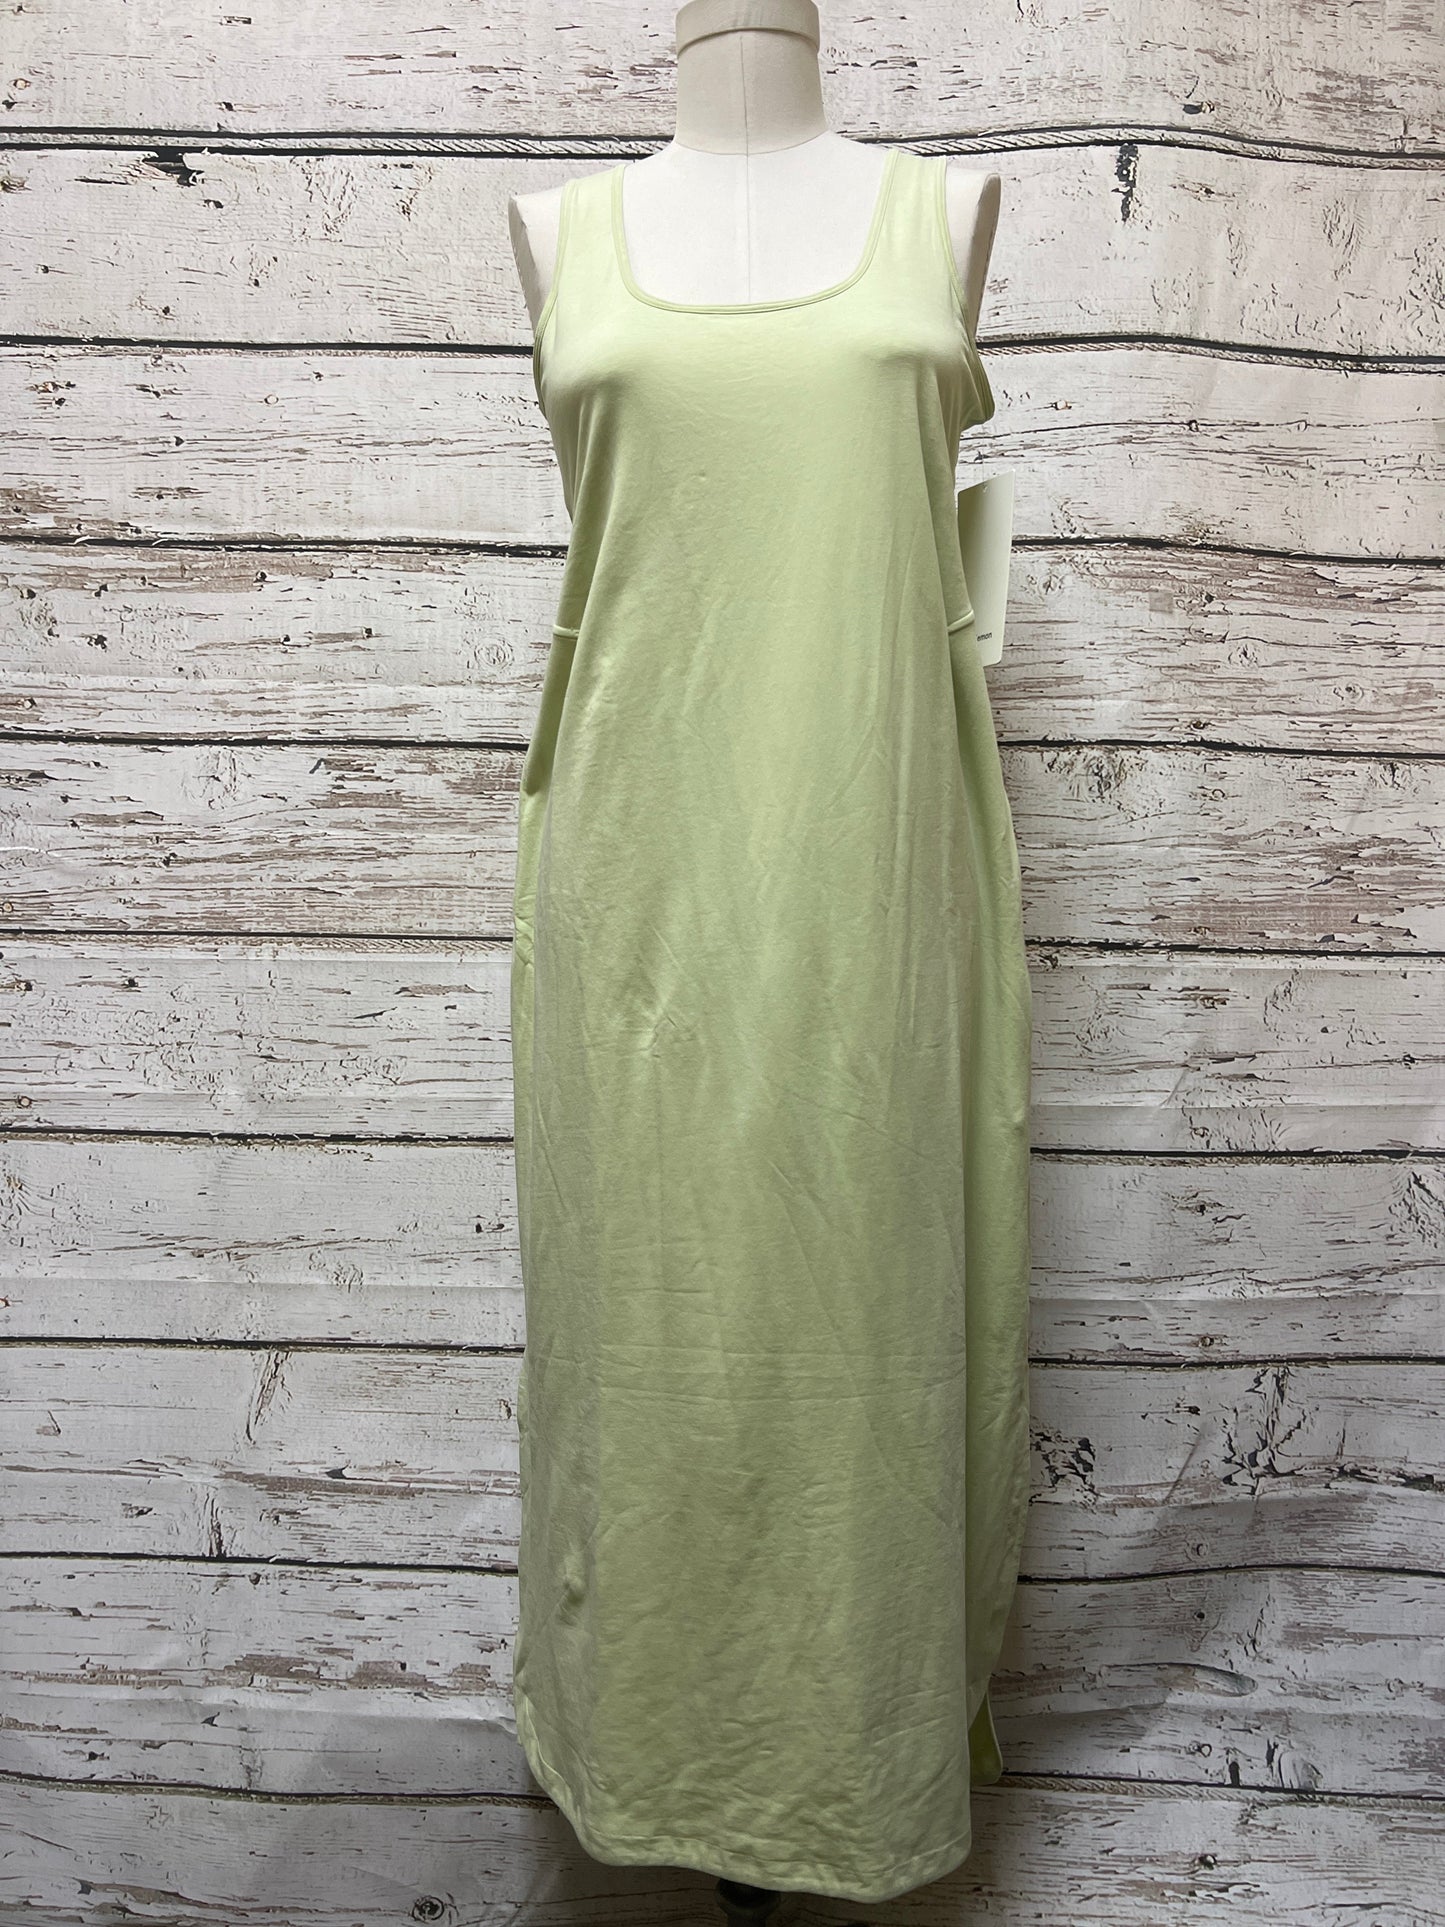 Green Athletic Dress Lululemon, Size 6